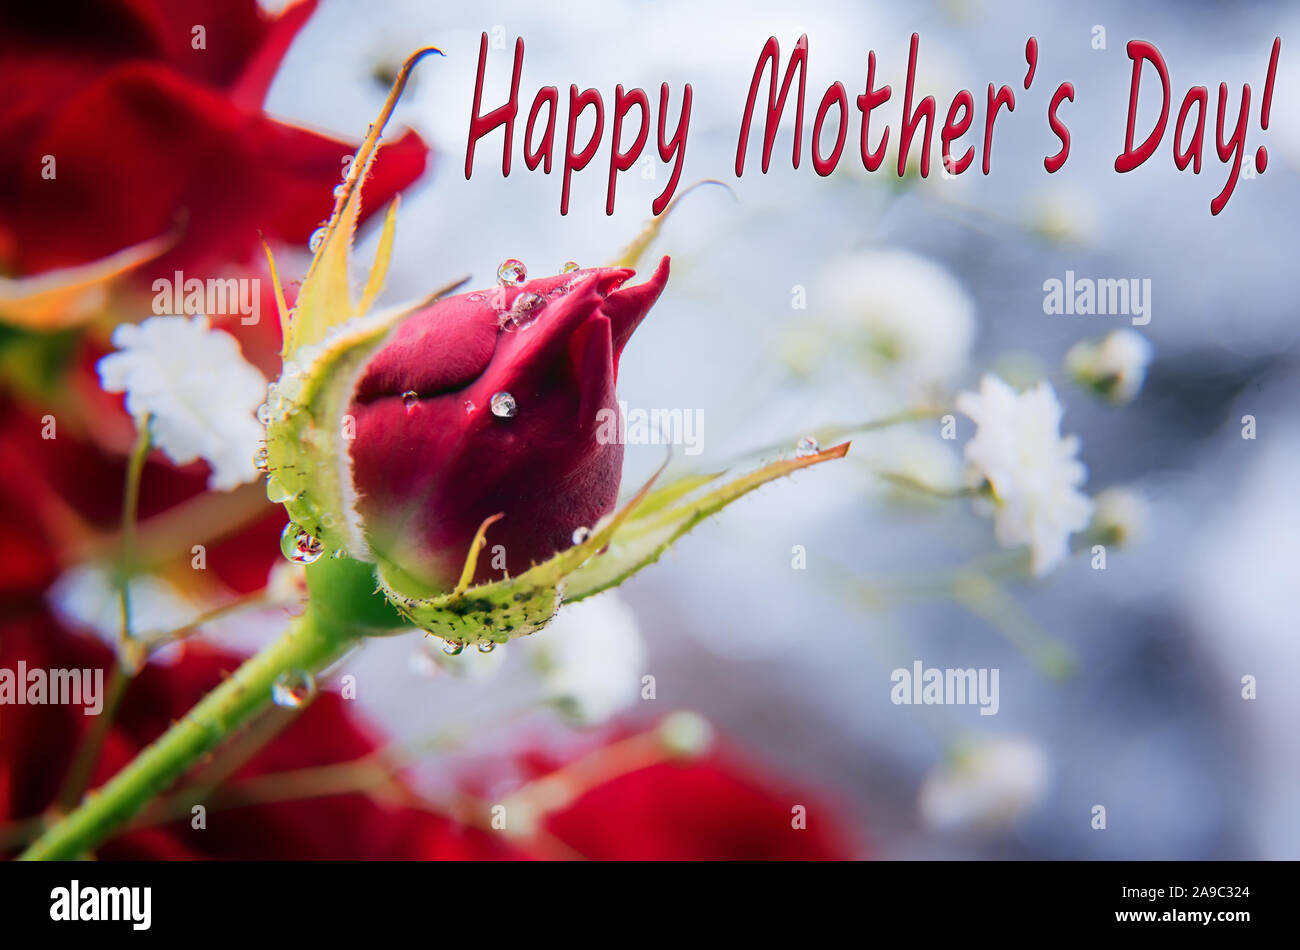 Horizontale Grußkarte zum Muttertag mit wünschen. Schöne rote Rose Bud mit glänzenden kleinen Wassertropfen. Selektive konzentrieren. Unfocused rote Rose ein Stockfoto